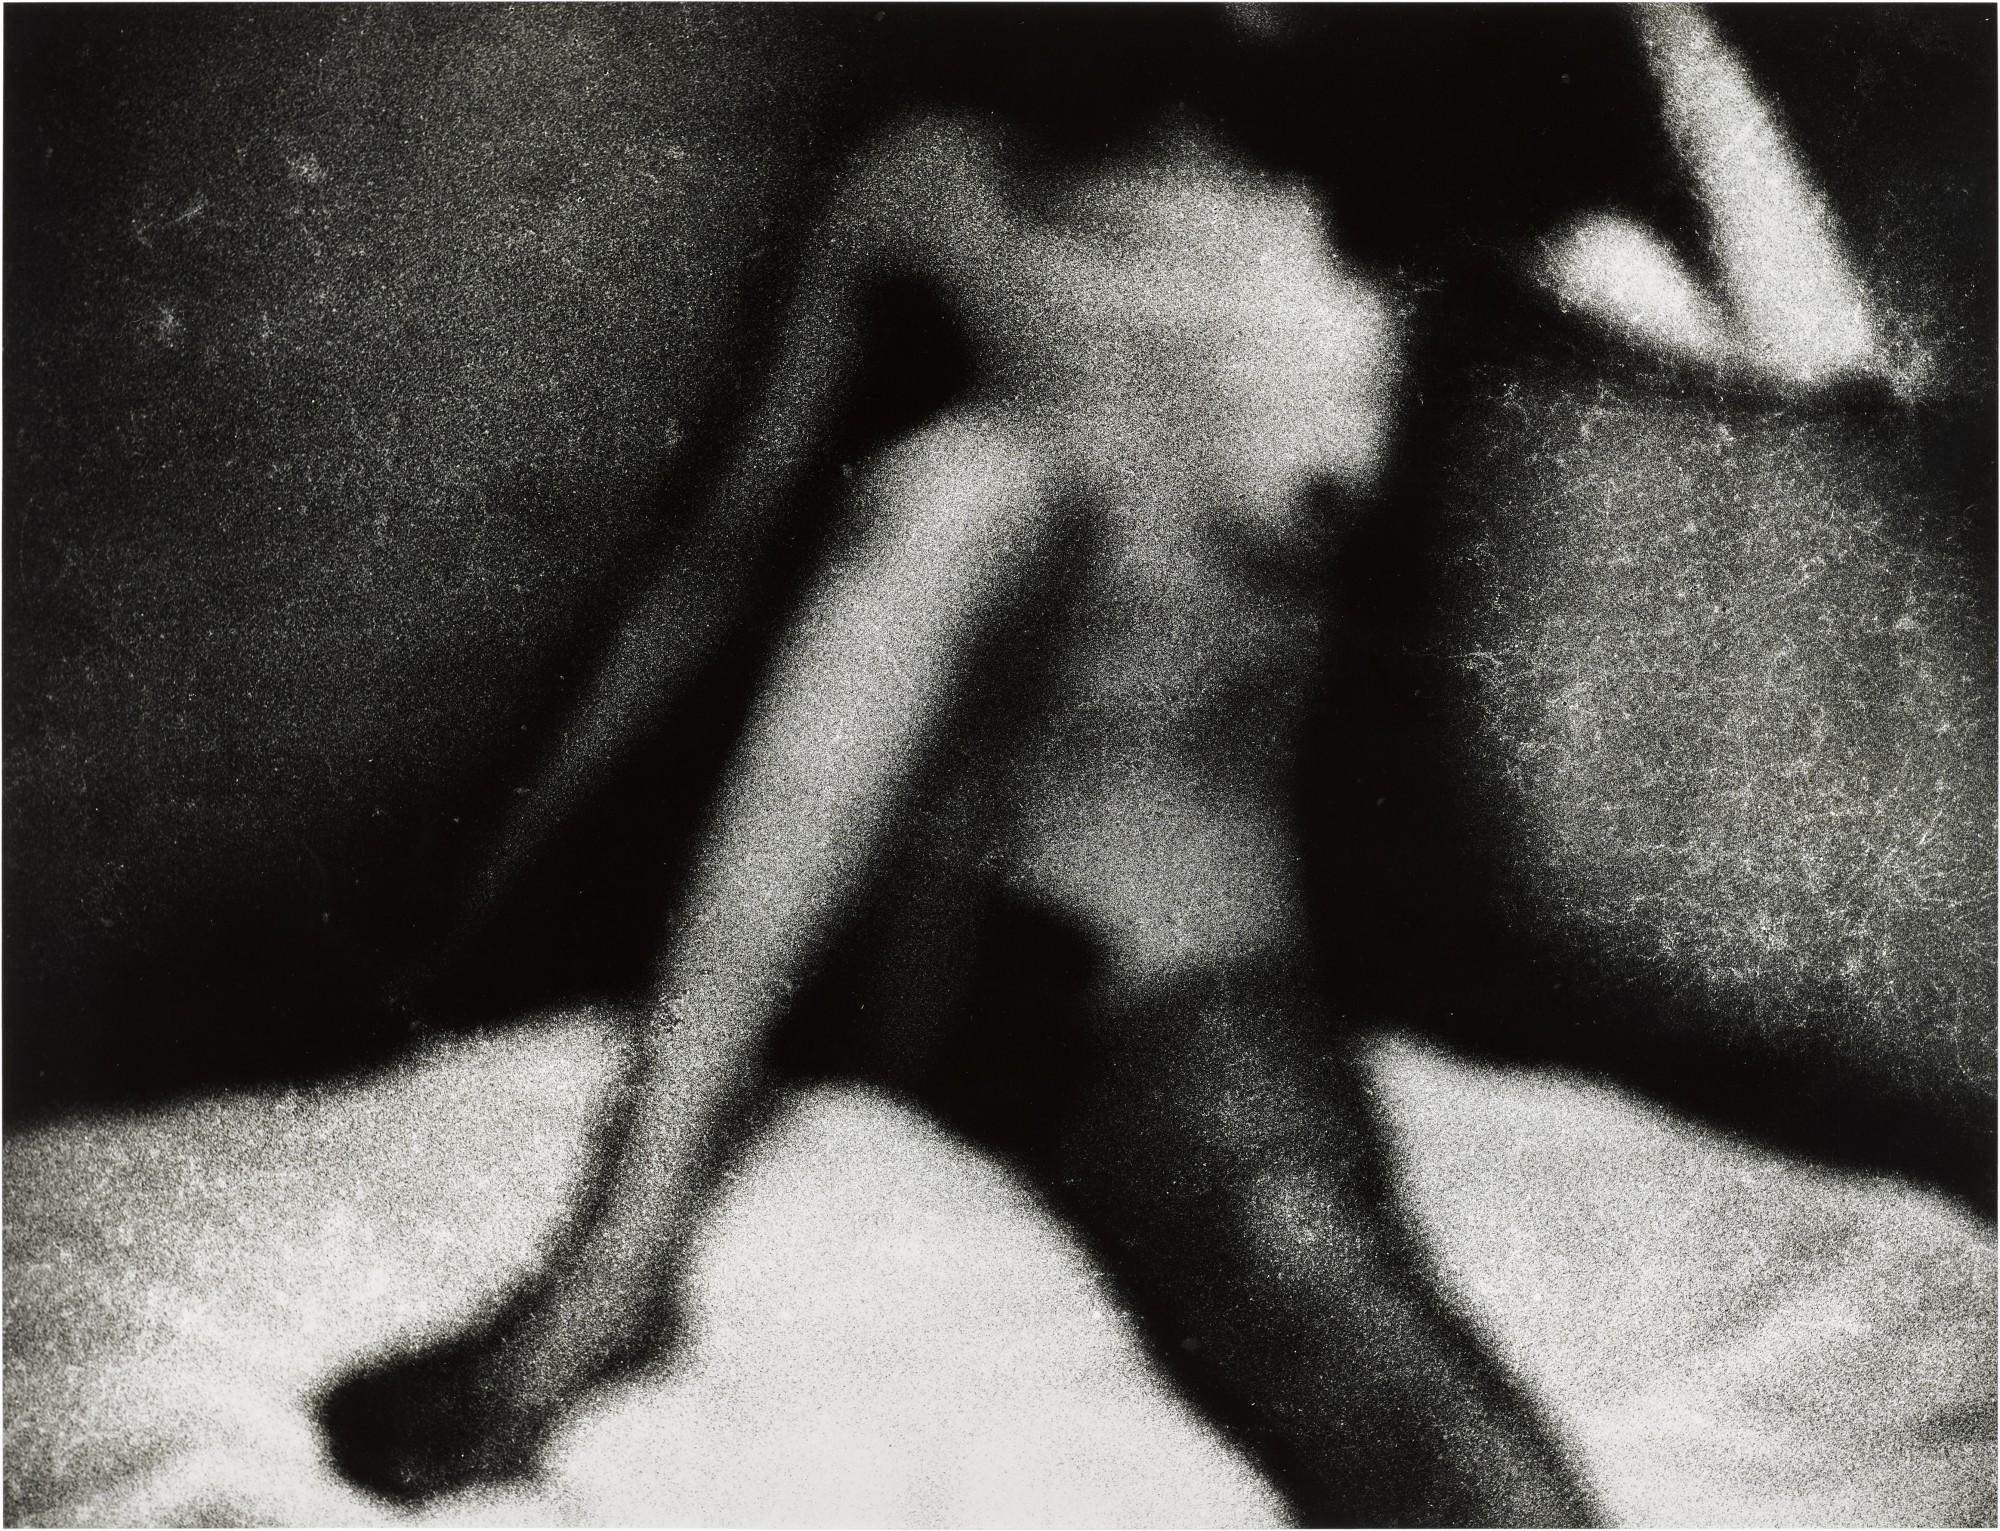 Erotique Voilée', 1933, Photographs, 2021